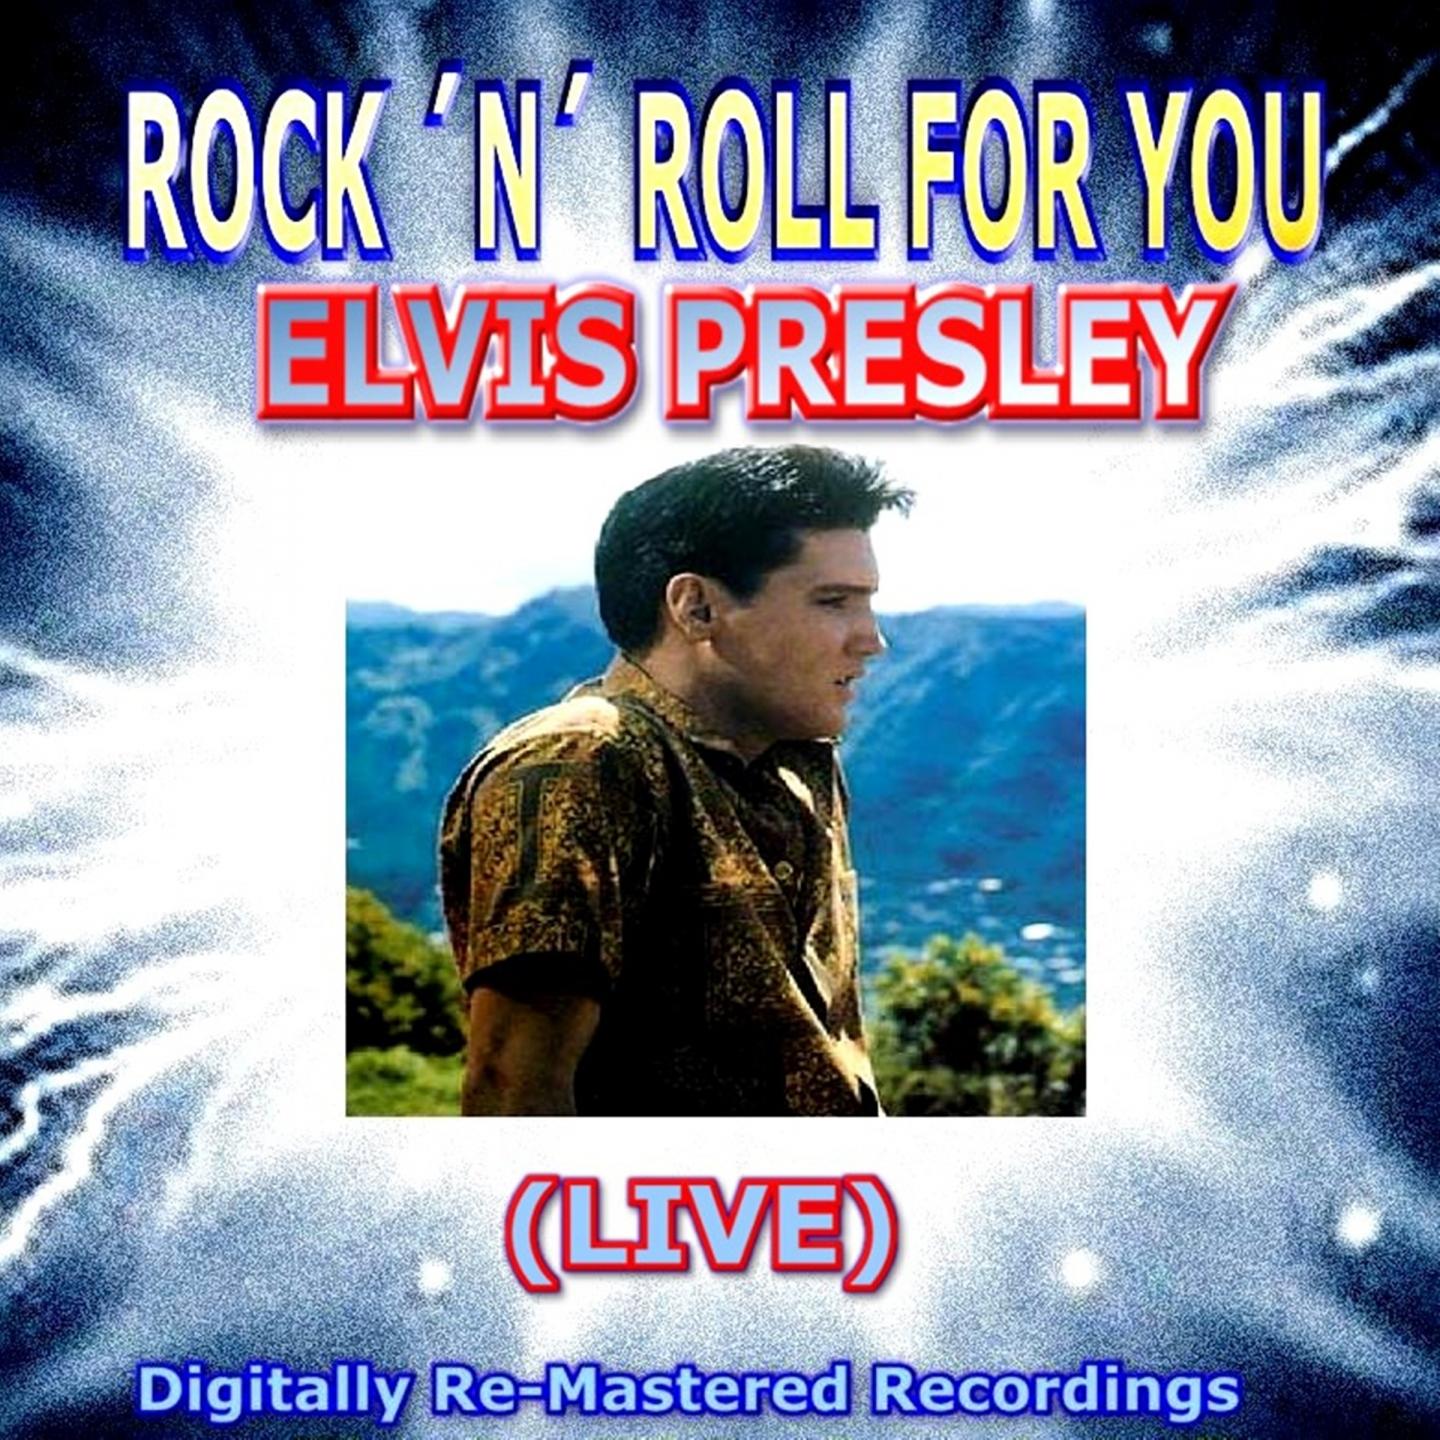 Rock 'n' Roll for You - Elvis Presley (Live)